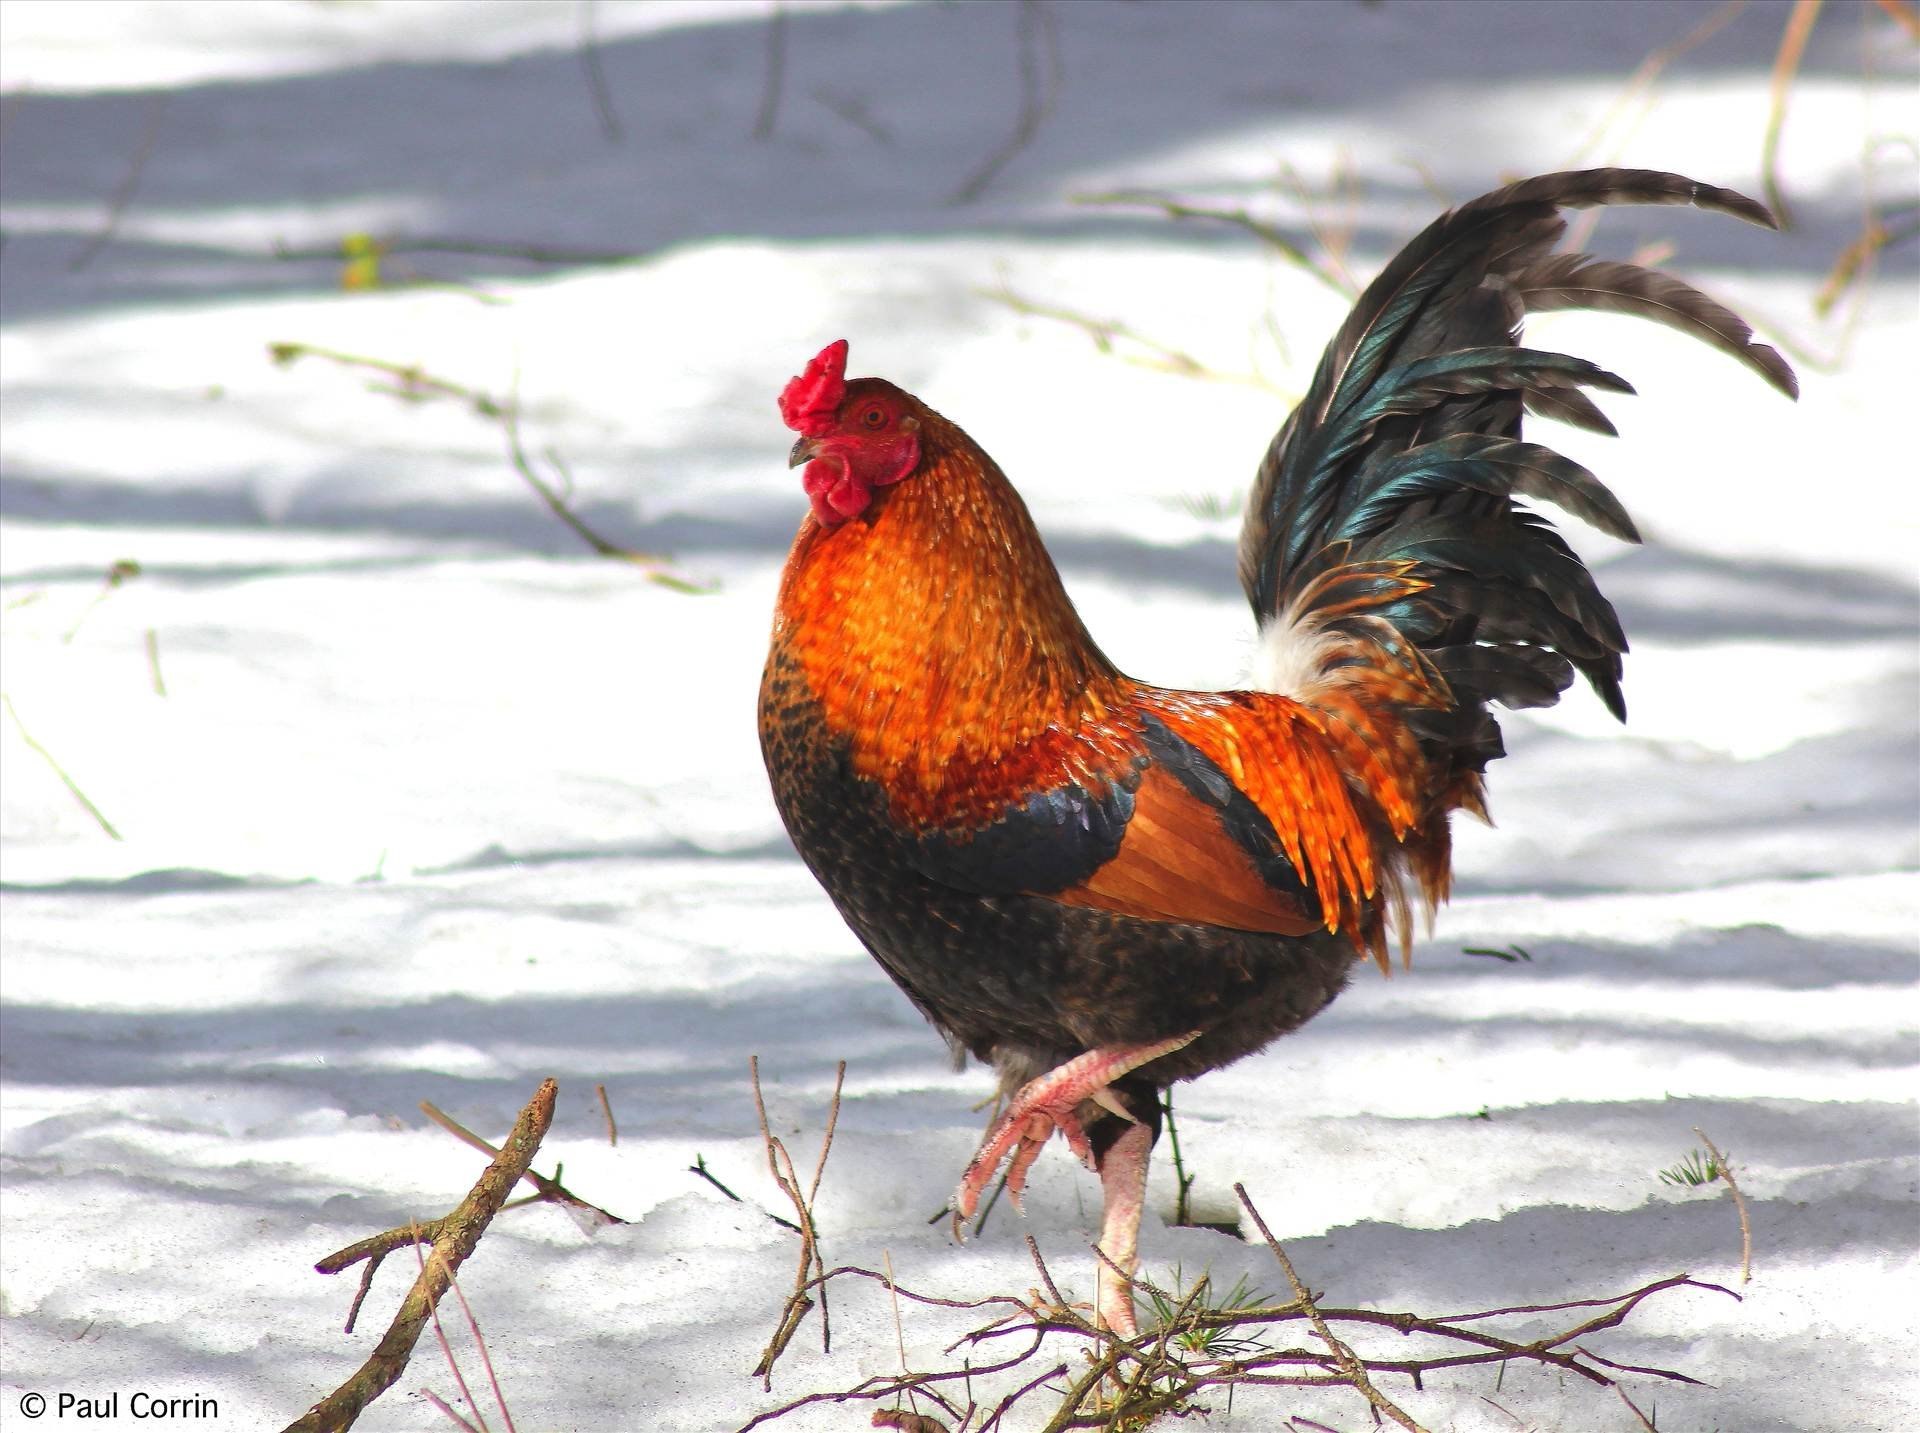 фото домашних птиц куриц зимой много